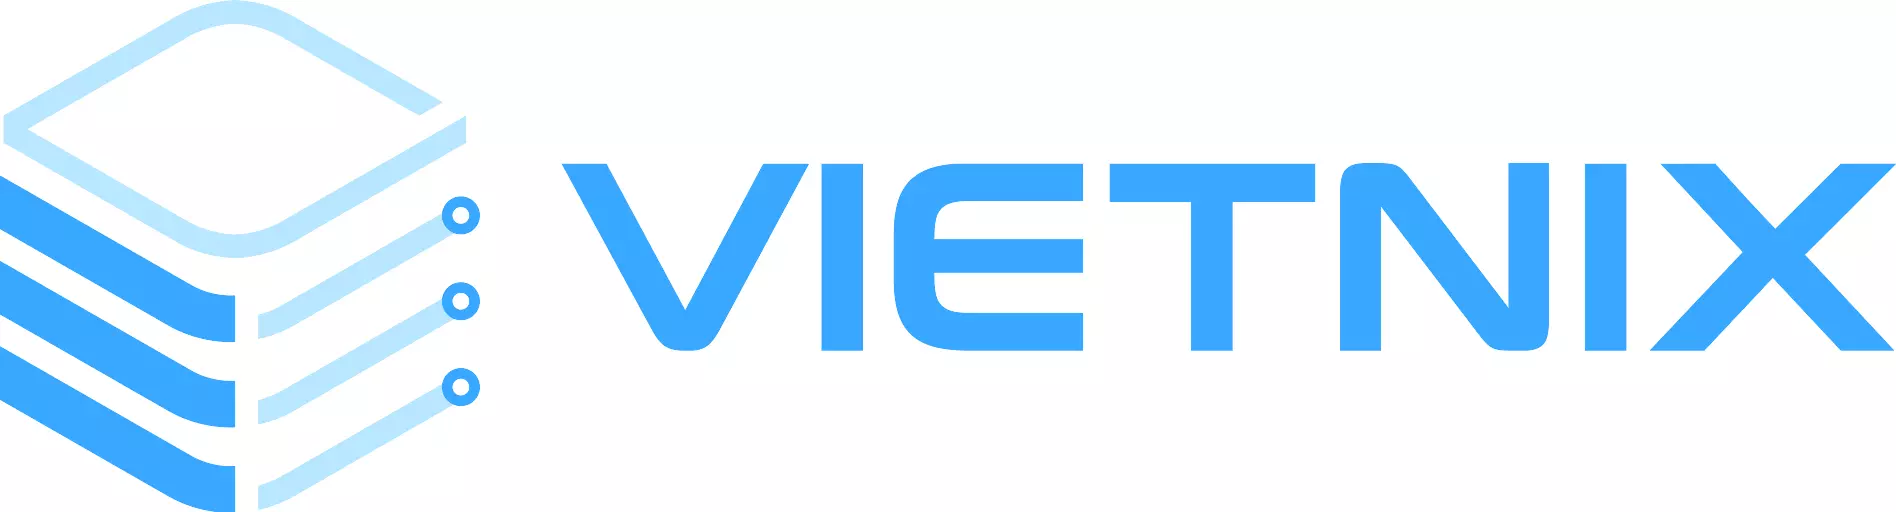 Vietnix - Nhà cung cấp hosting tốt, giá rẻ tại Việt Nam hiện nay